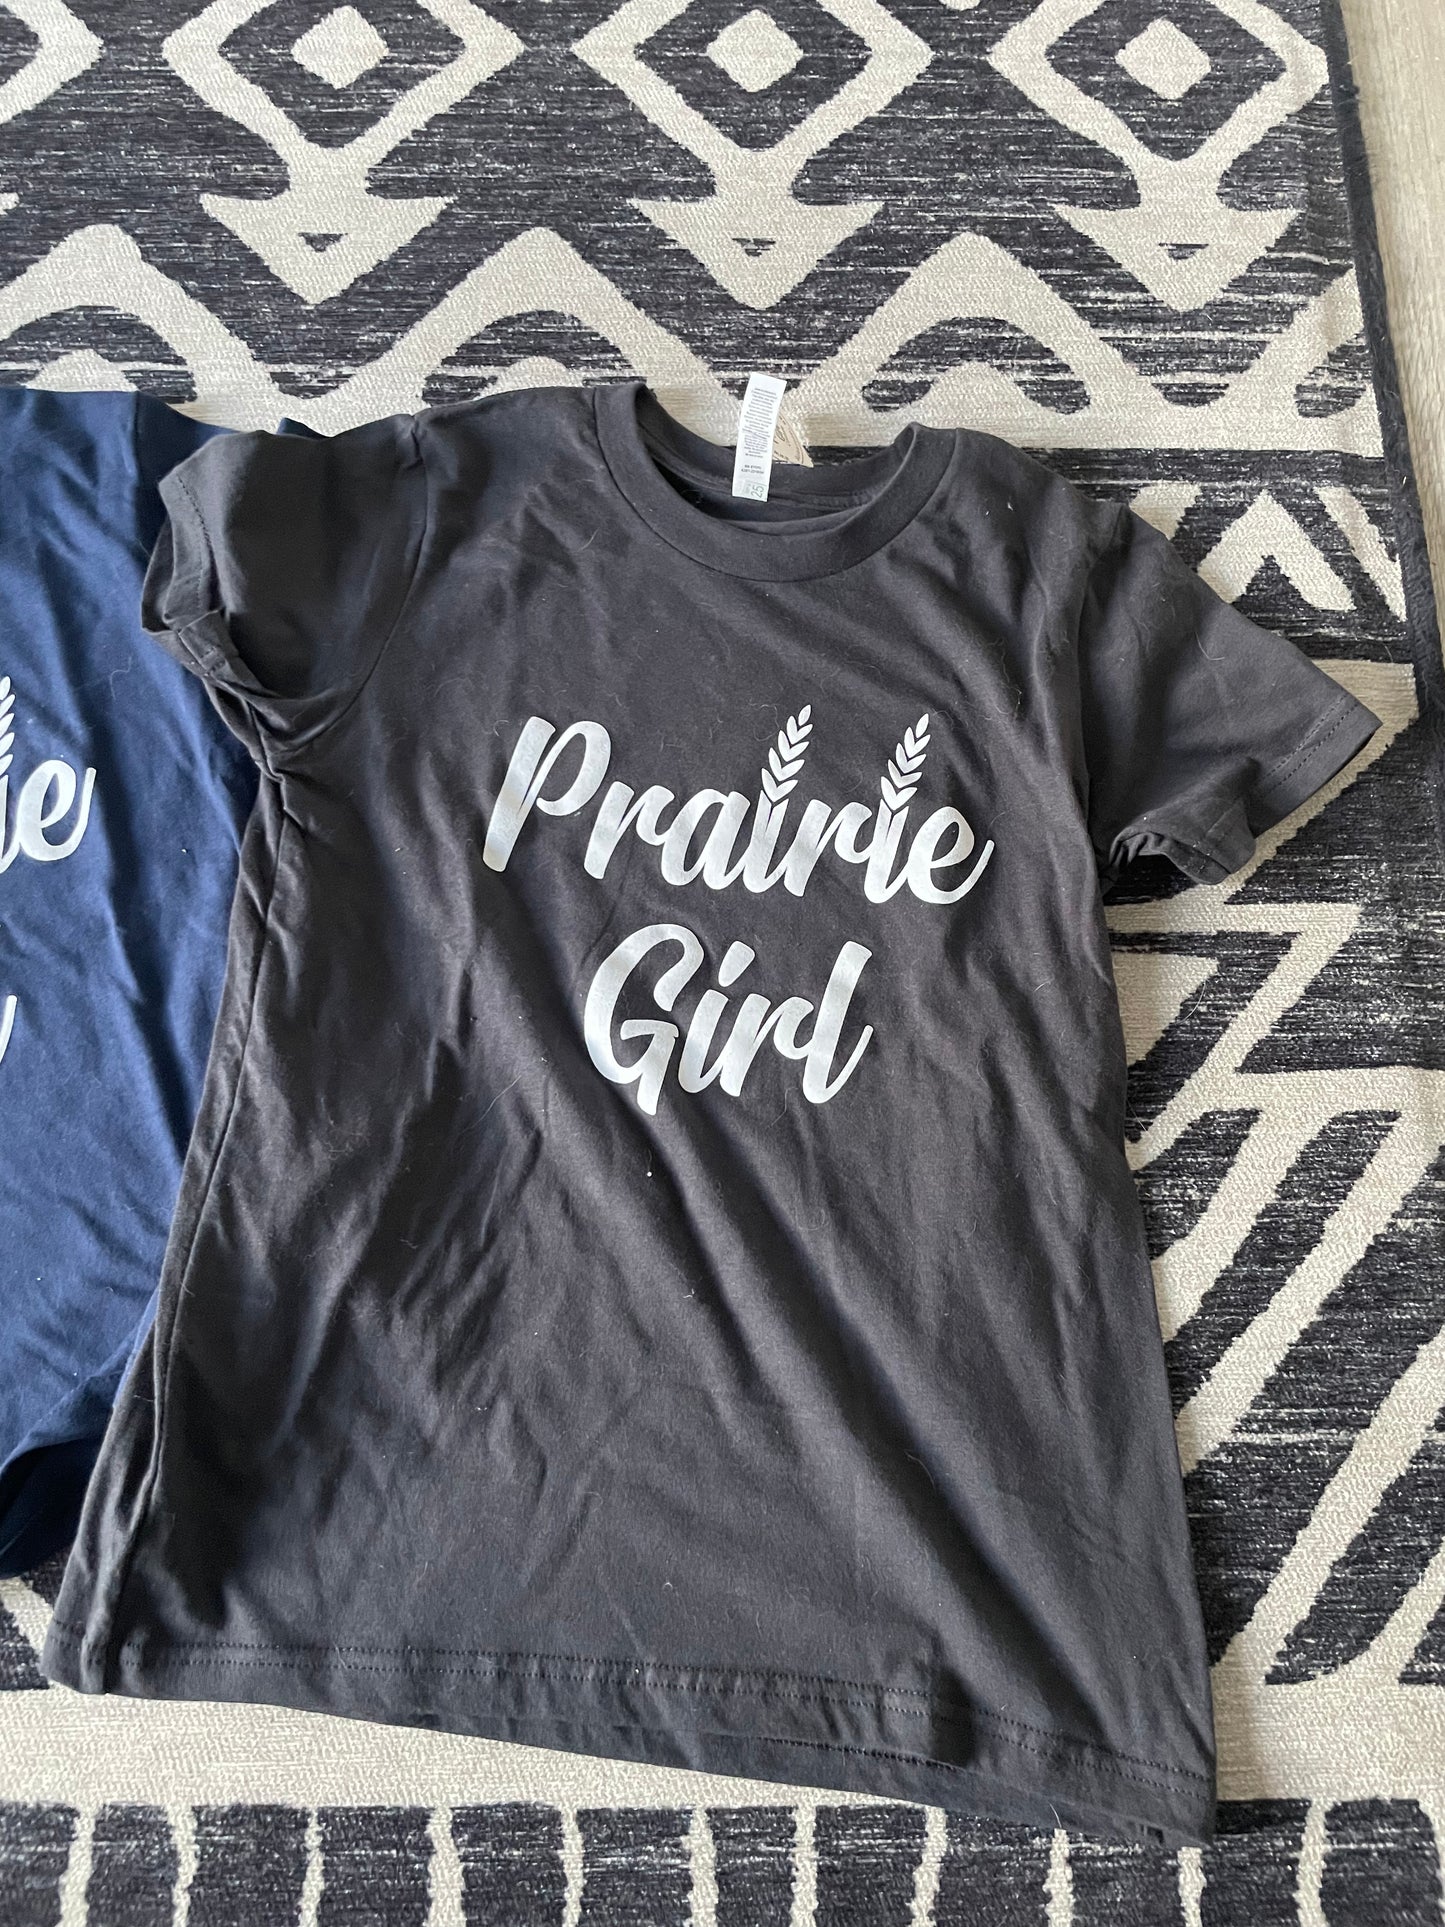 Prairie Girl Kids Tee